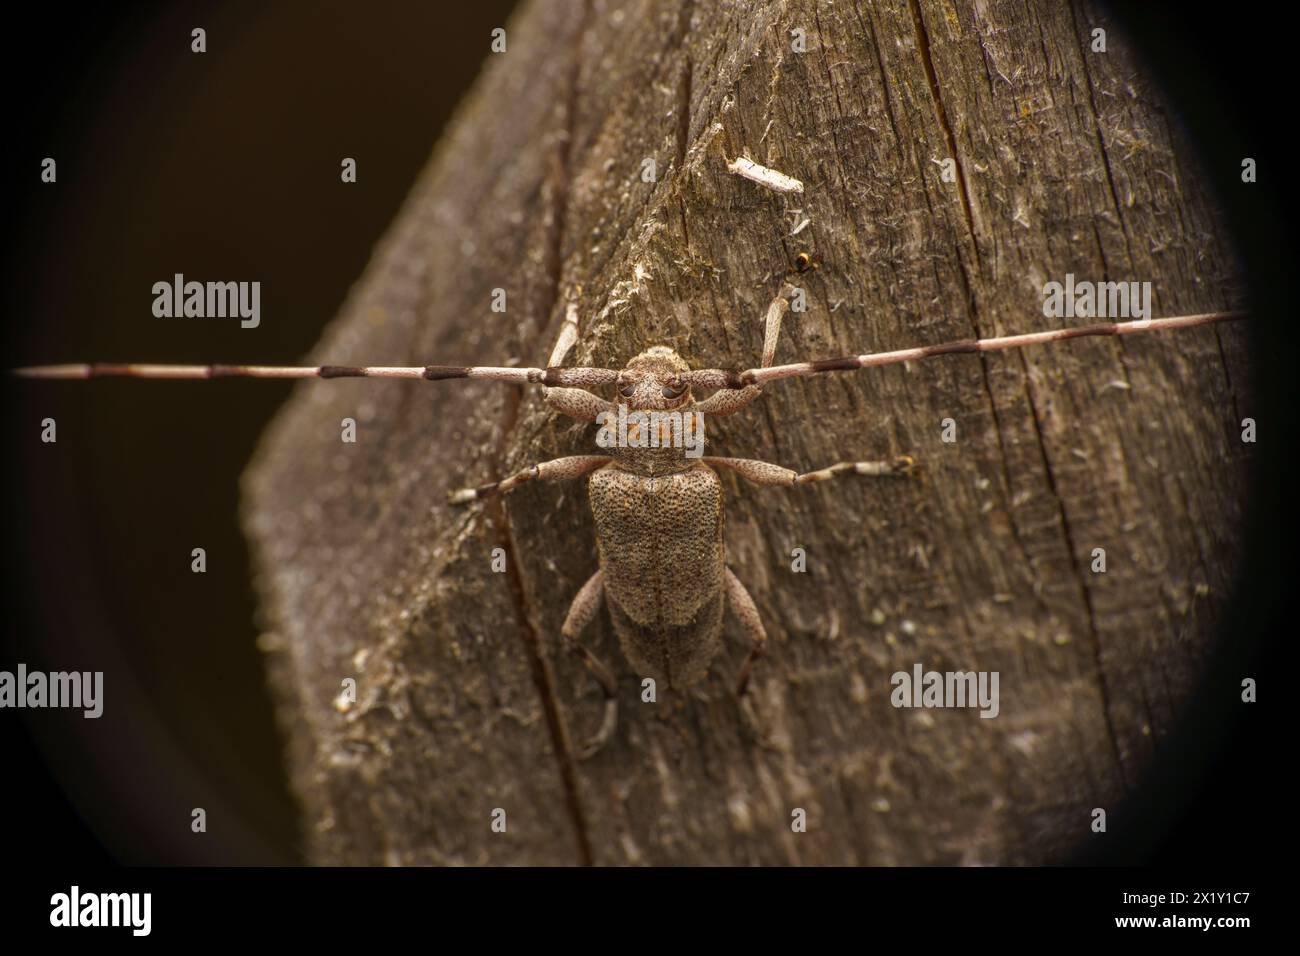 Acanthocinus aedilis Familie Cerambycidae Gattung Acanthocinus Timberman Käfer Holzbohnenkäfer Longhornkäfer wilde Natur Insektenfotografie, Bild Stockfoto